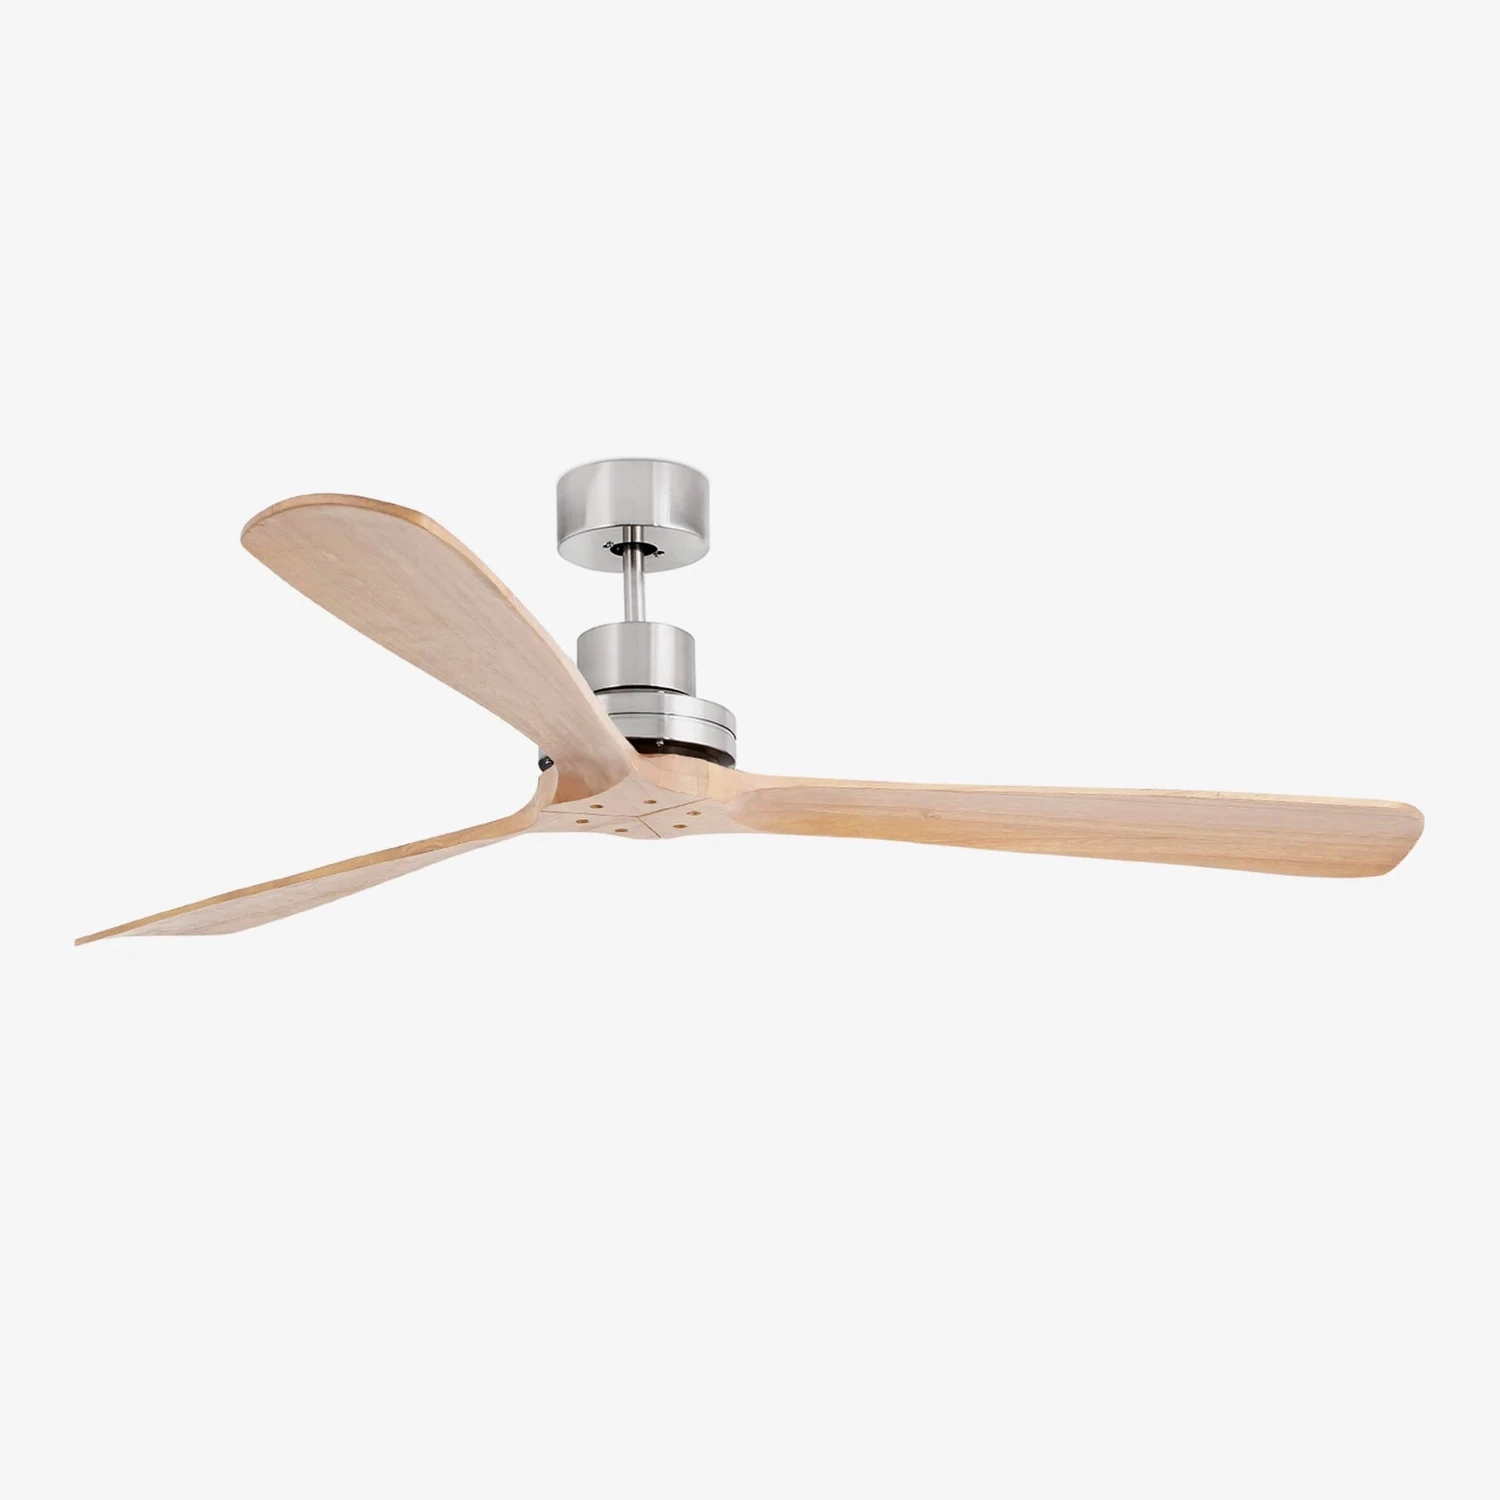 LANTAU XL Satin Nickel / Pine solid wood blades ceiling fan Ø168cm with remote control included